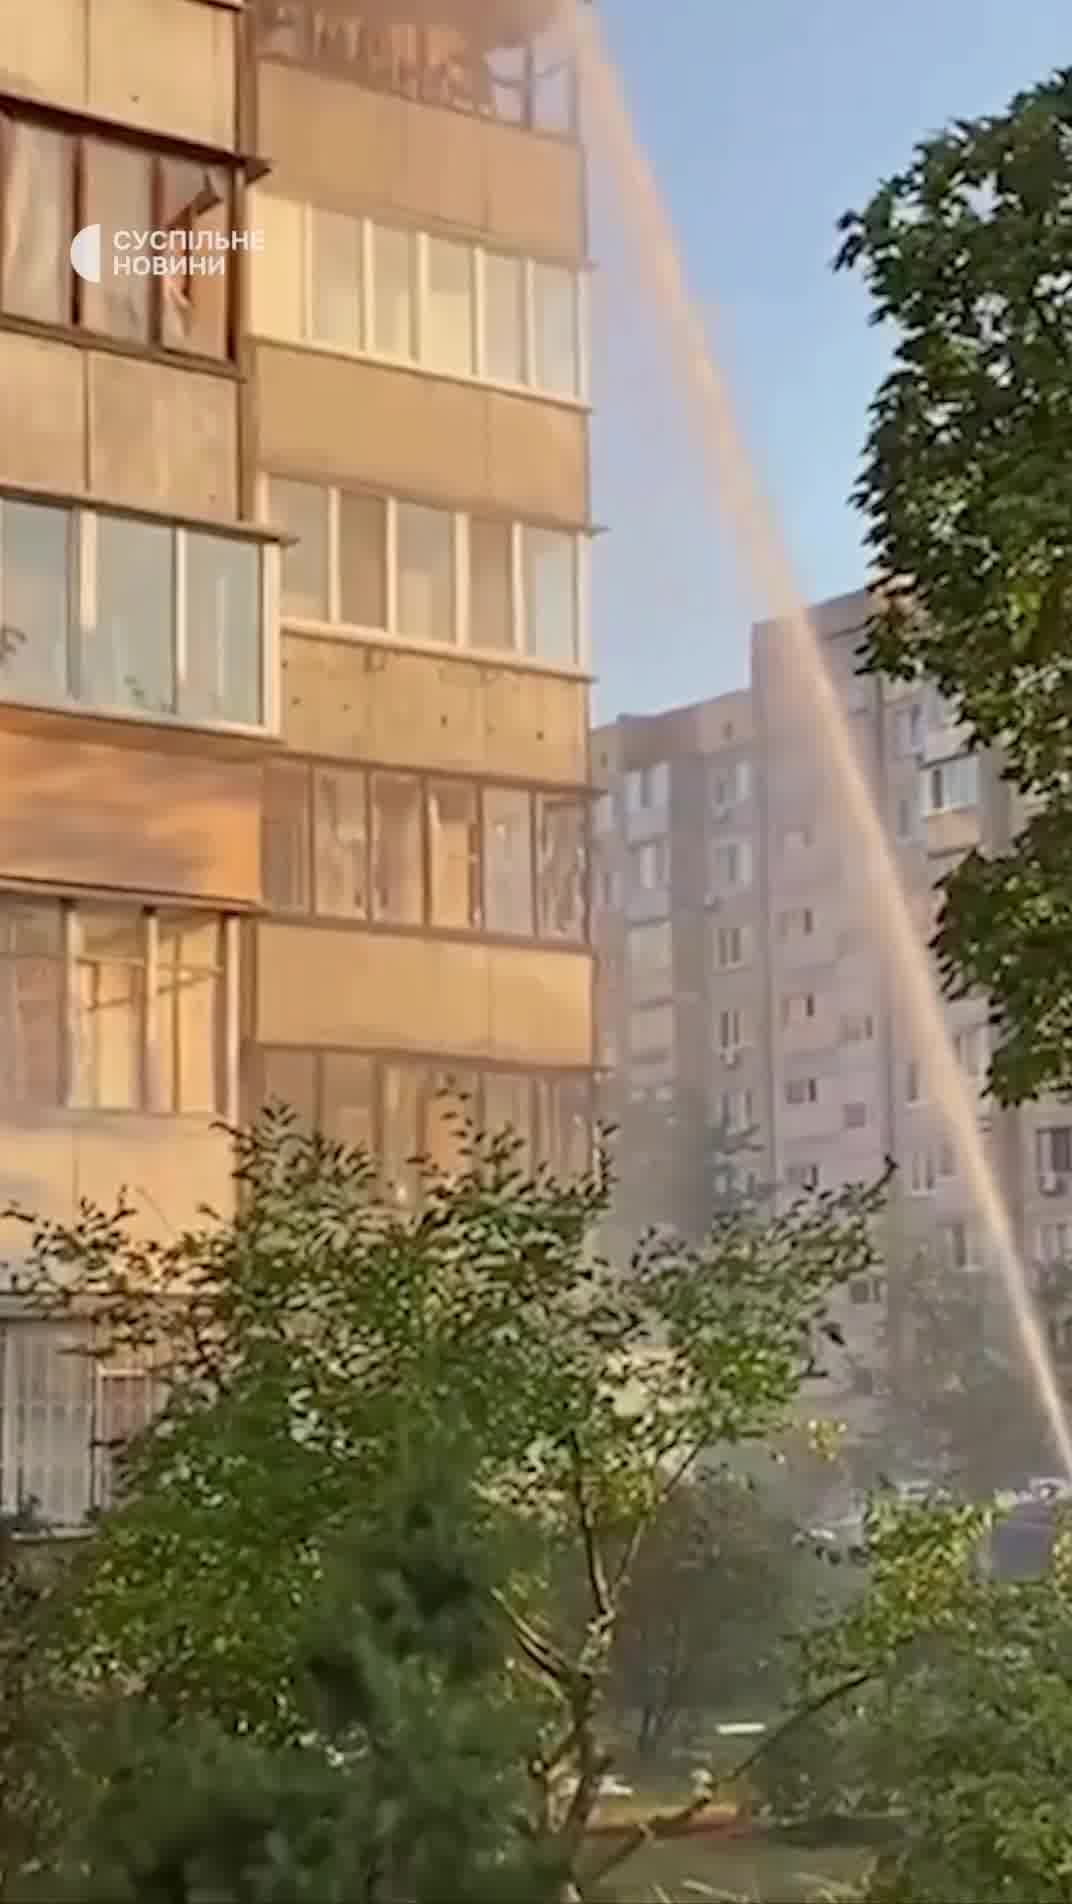 Woongebouw beschadigd als gevolg van een Russische raketaanval in het district Obolonsky in Kyiv